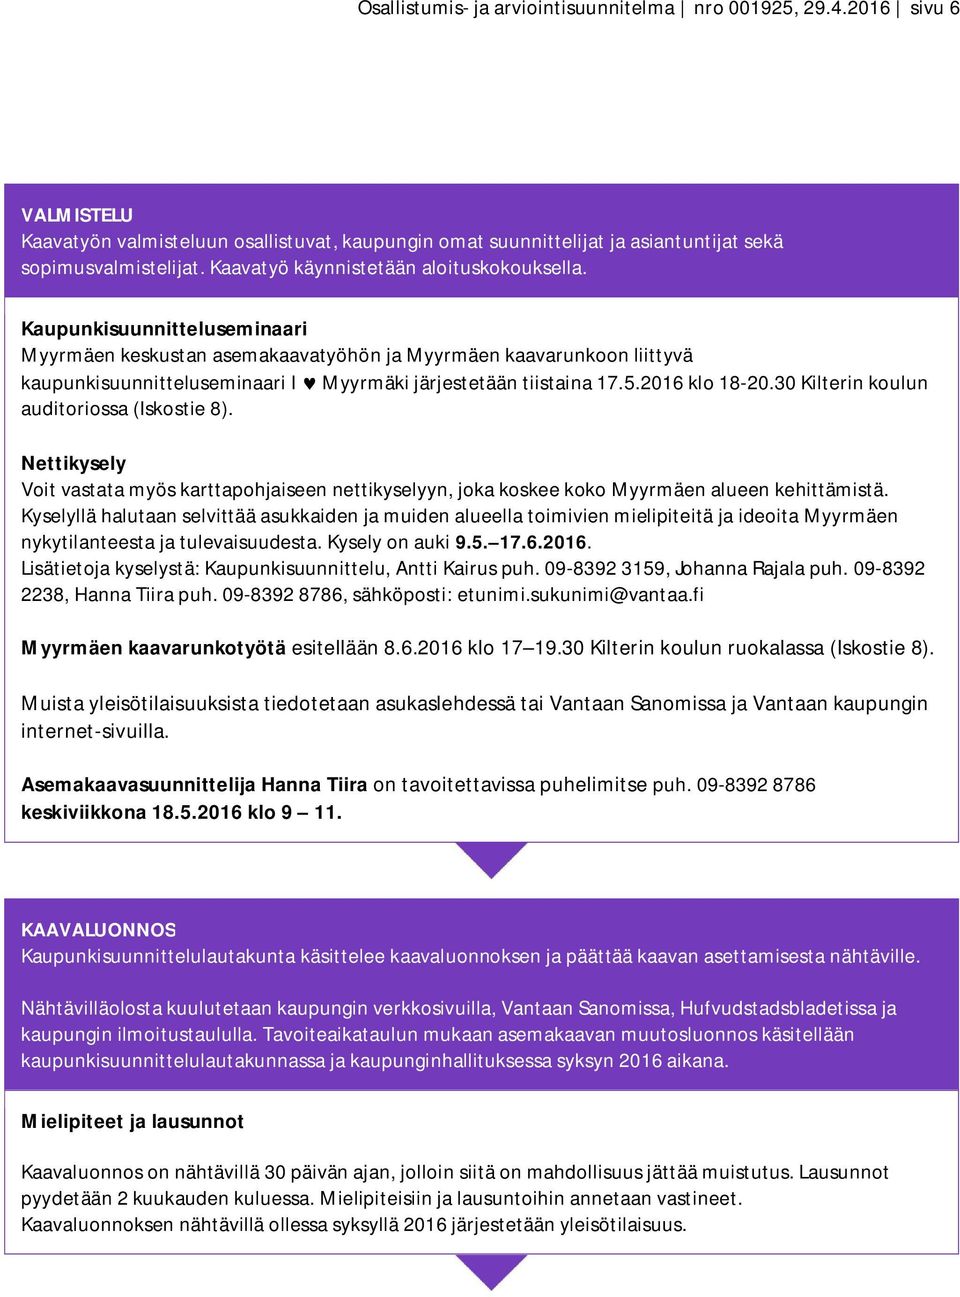 Kaupunkisuunnitteluseminaari Myyrmäen keskustan asemakaavatyöhön ja Myyrmäen kaavarunkoon liittyvä kaupunkisuunnitteluseminaari I ' Myyrmäki järjestetään tiistaina 17.5.2016 klo 18-20.